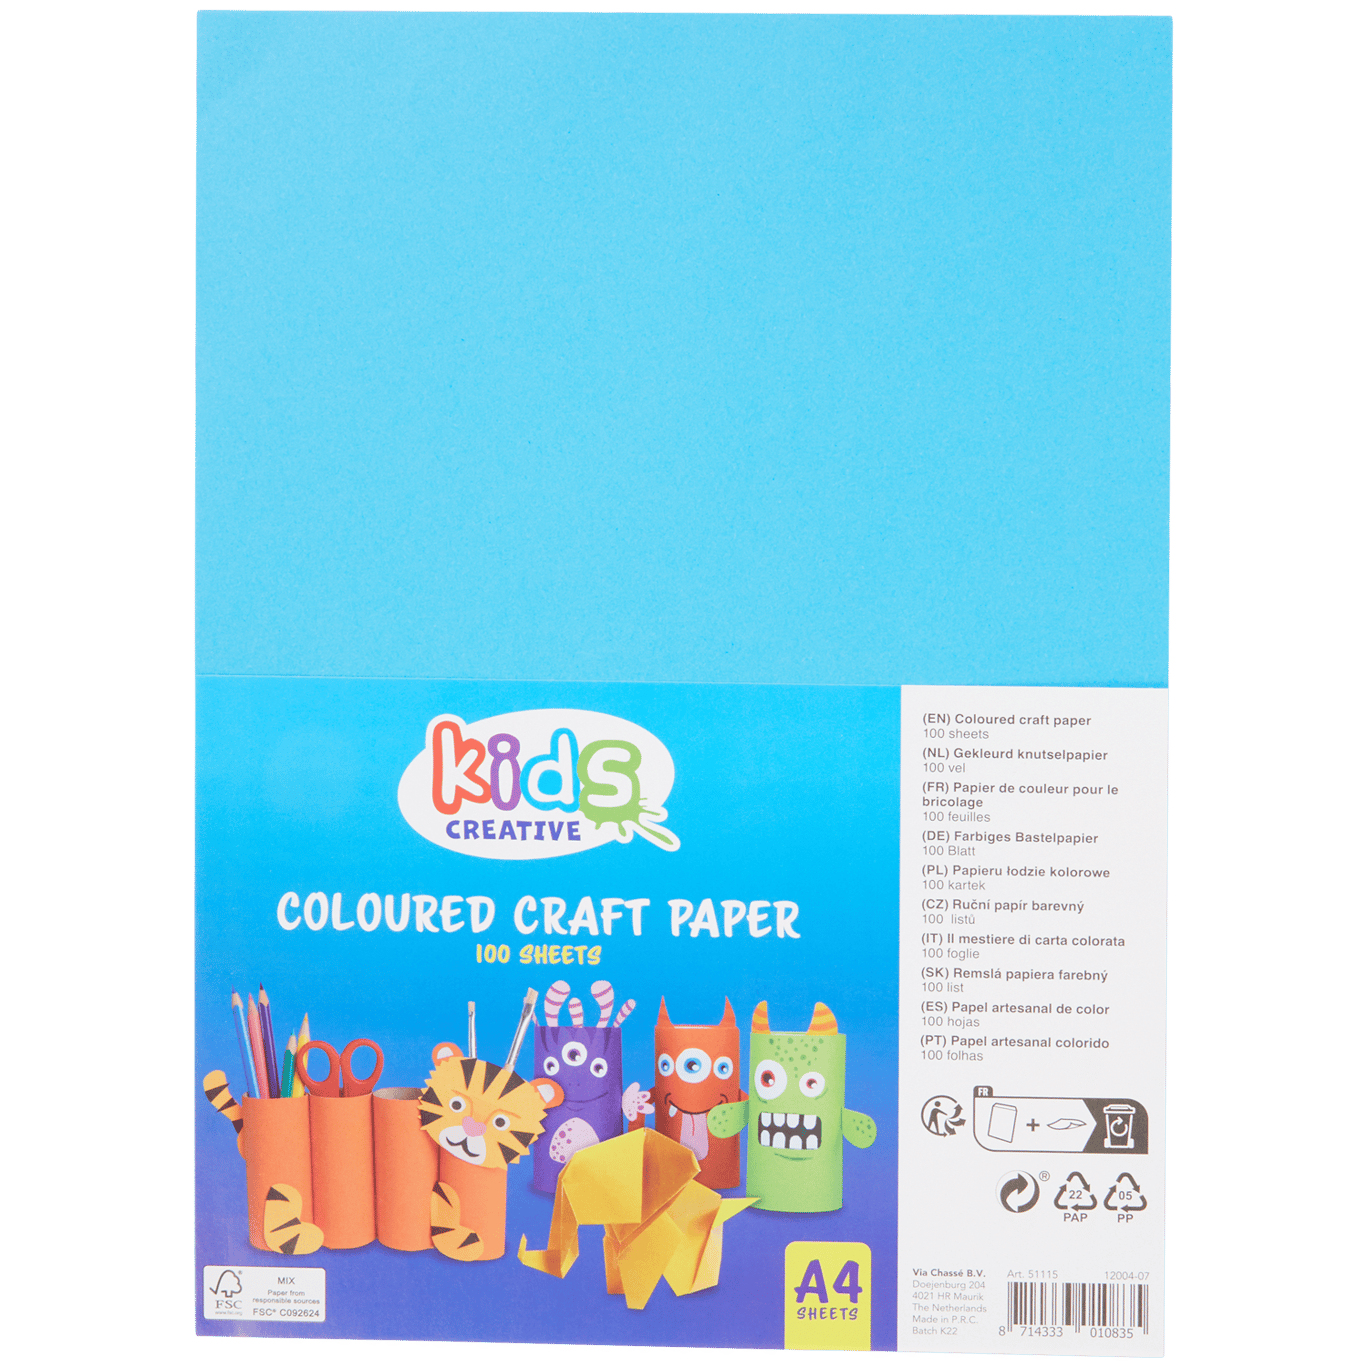 Hojas de colores para manualidades Kids Creative